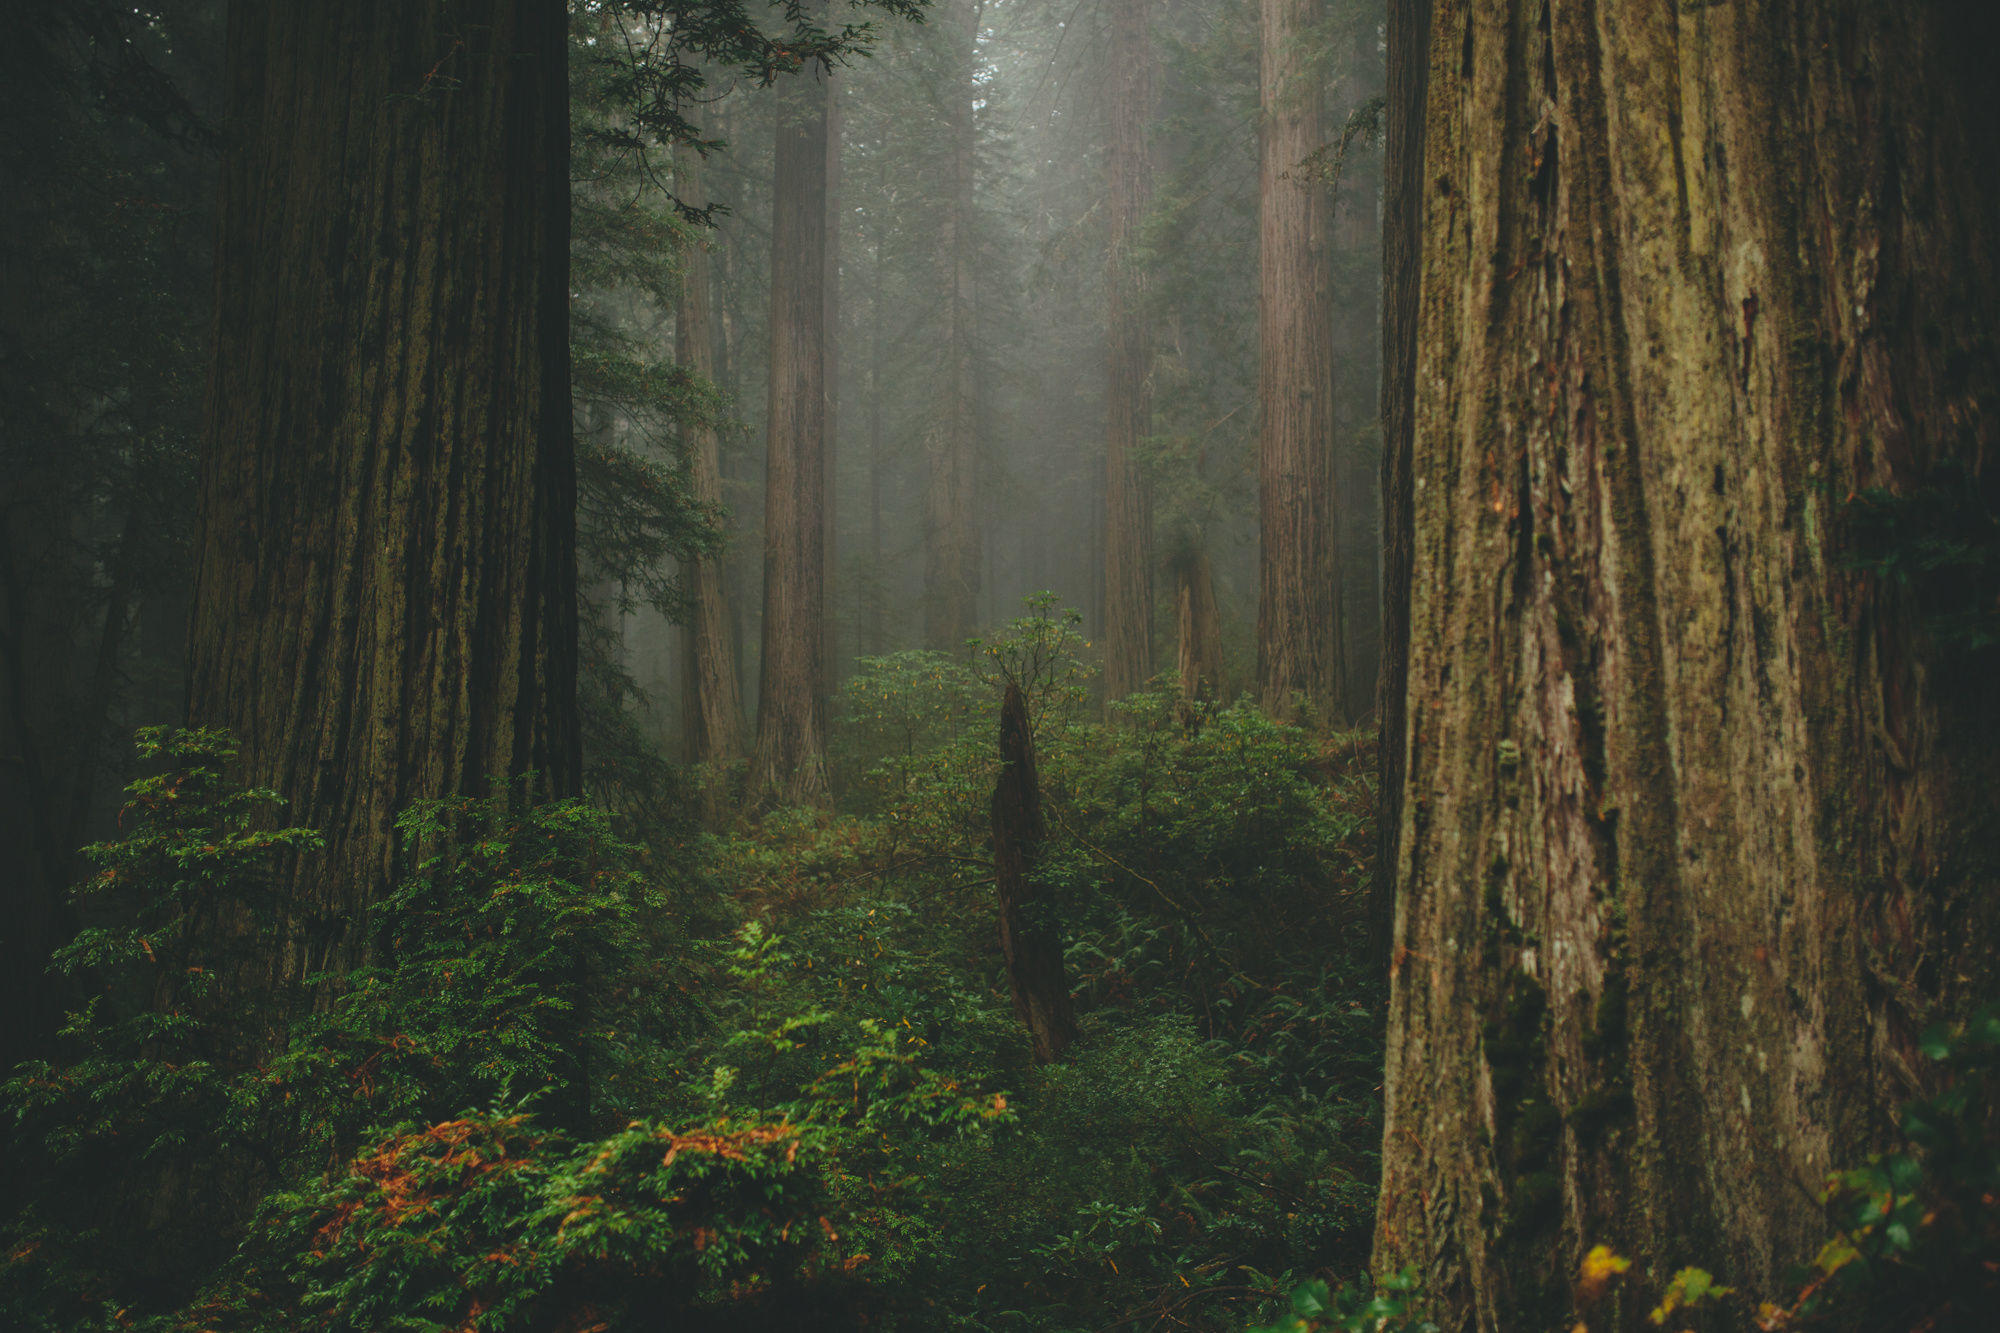 Deep in the Redwoods